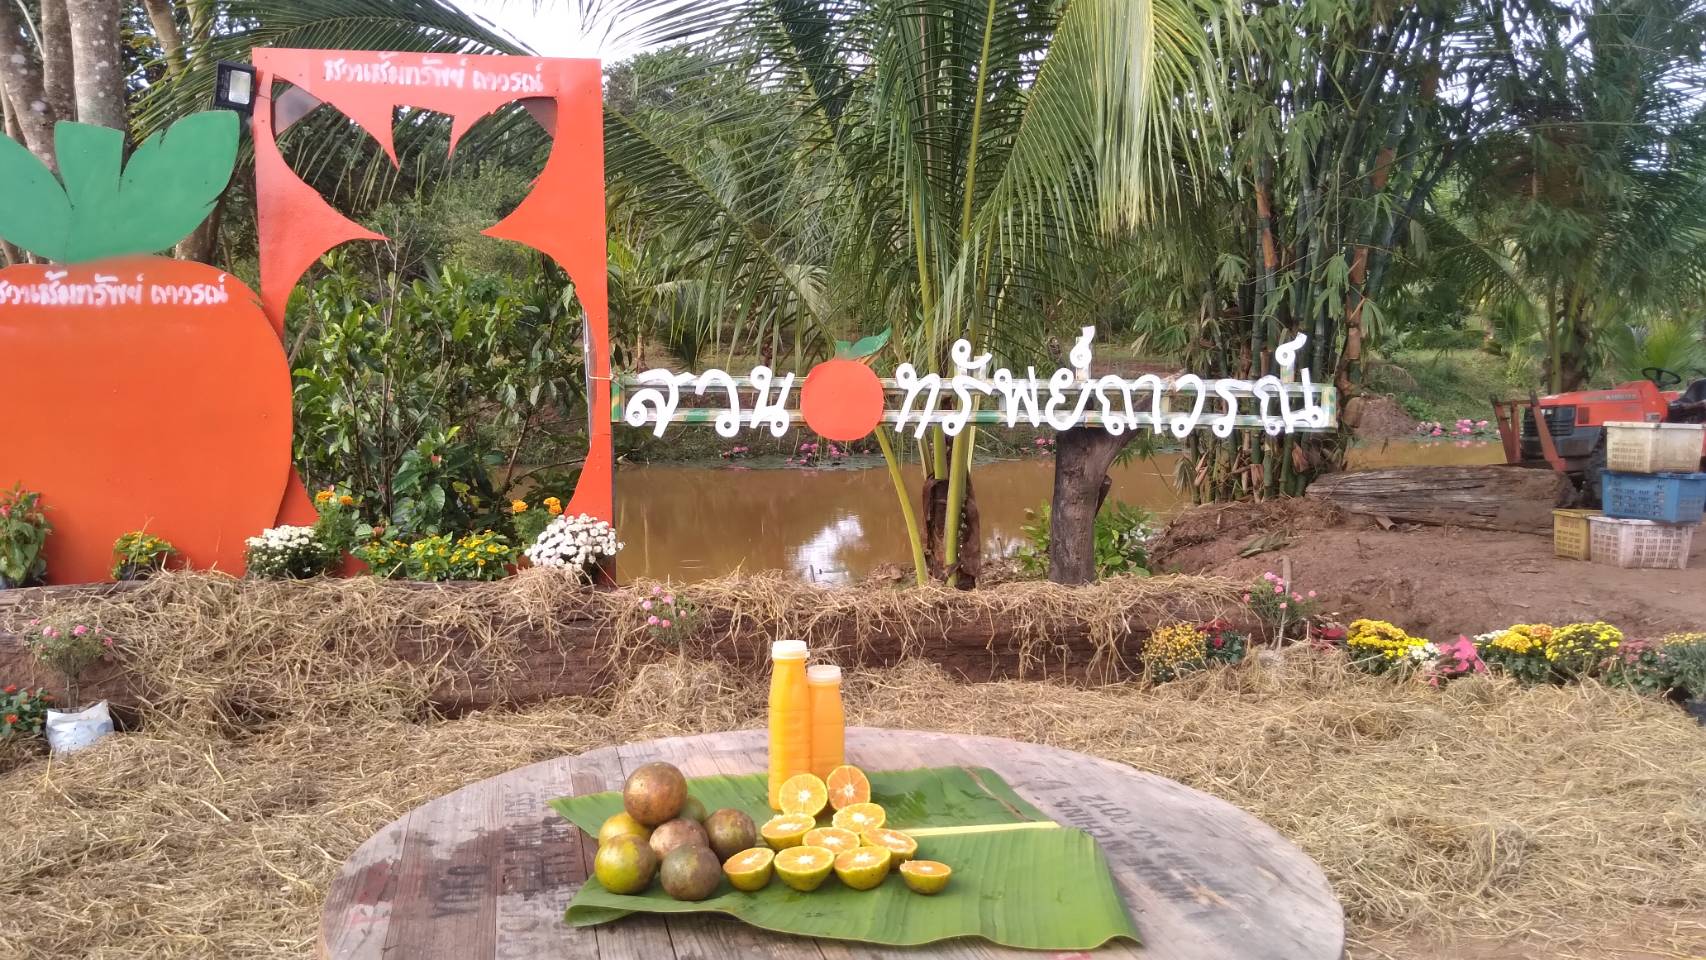 ปลูกสวนส้มบางมด สีทอง ให้นักท่องเที่ยวได้ชิมแบบอิ่มจุใจถึงสวน 20 บาทต่อคน -  Phitsanulok Hotnews